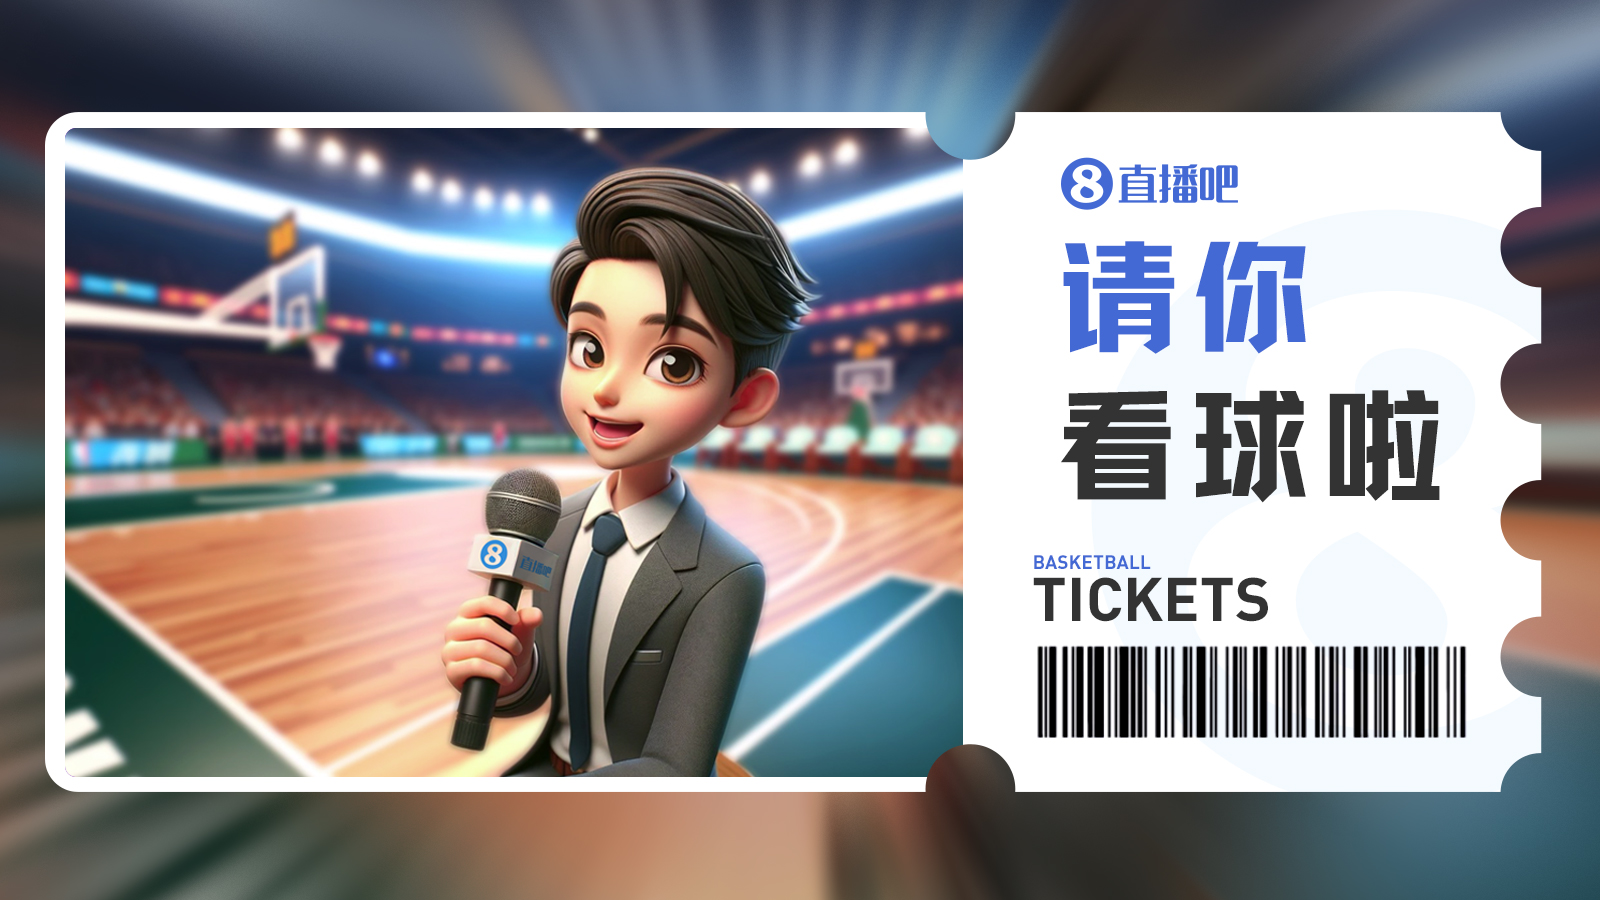 『请你看球』第6期留言抽3月24日『深圳vs广州』免费门票